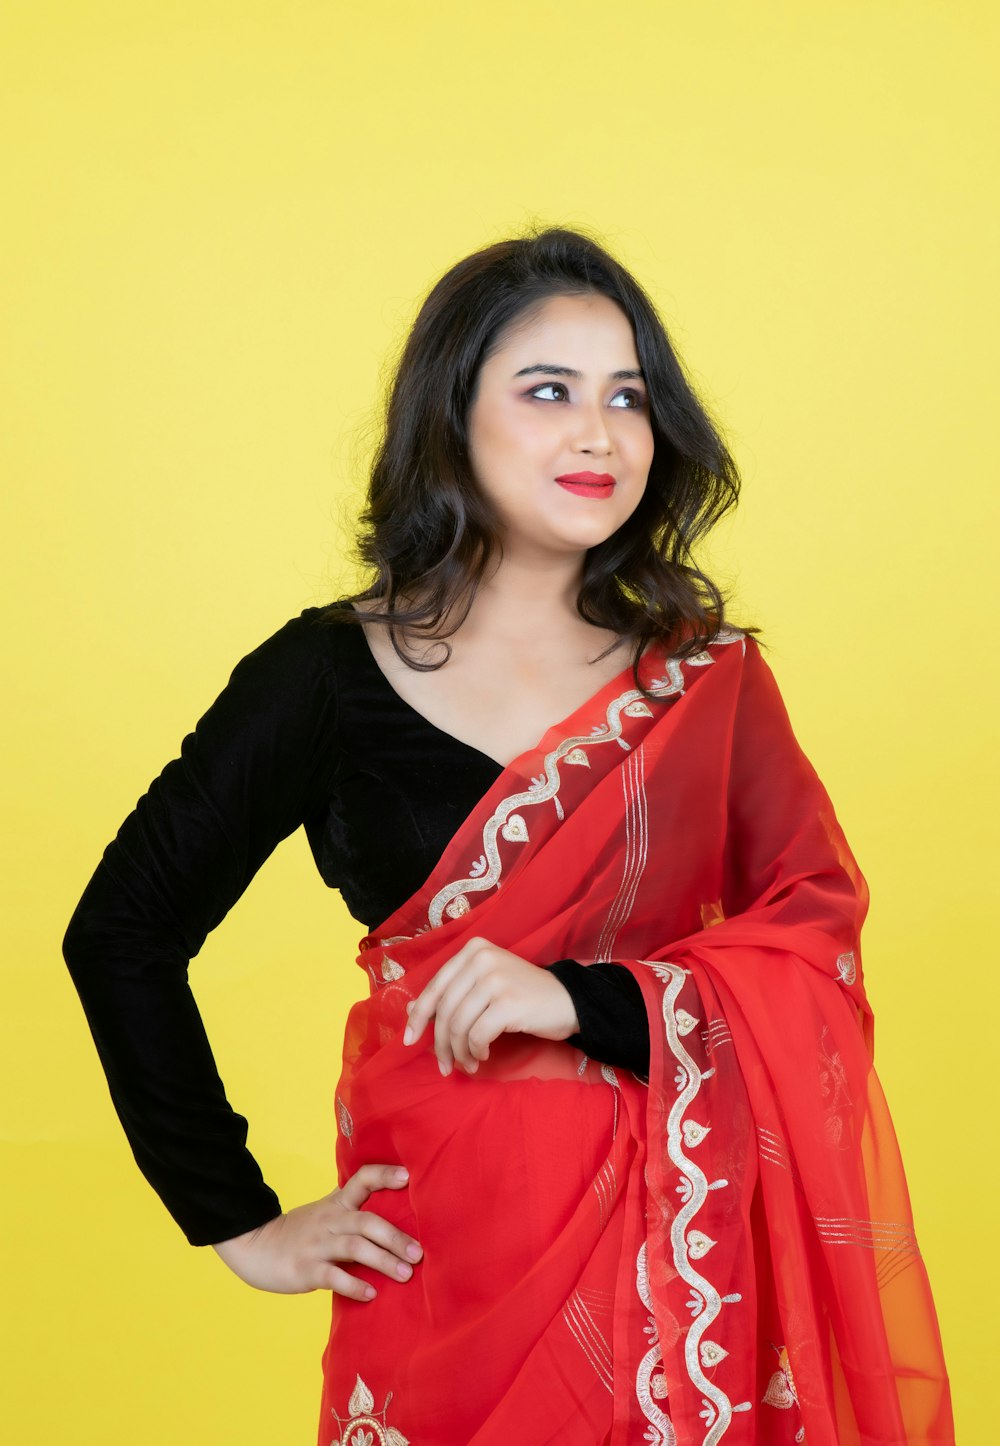 Une femme portant un sari rouge et blanc